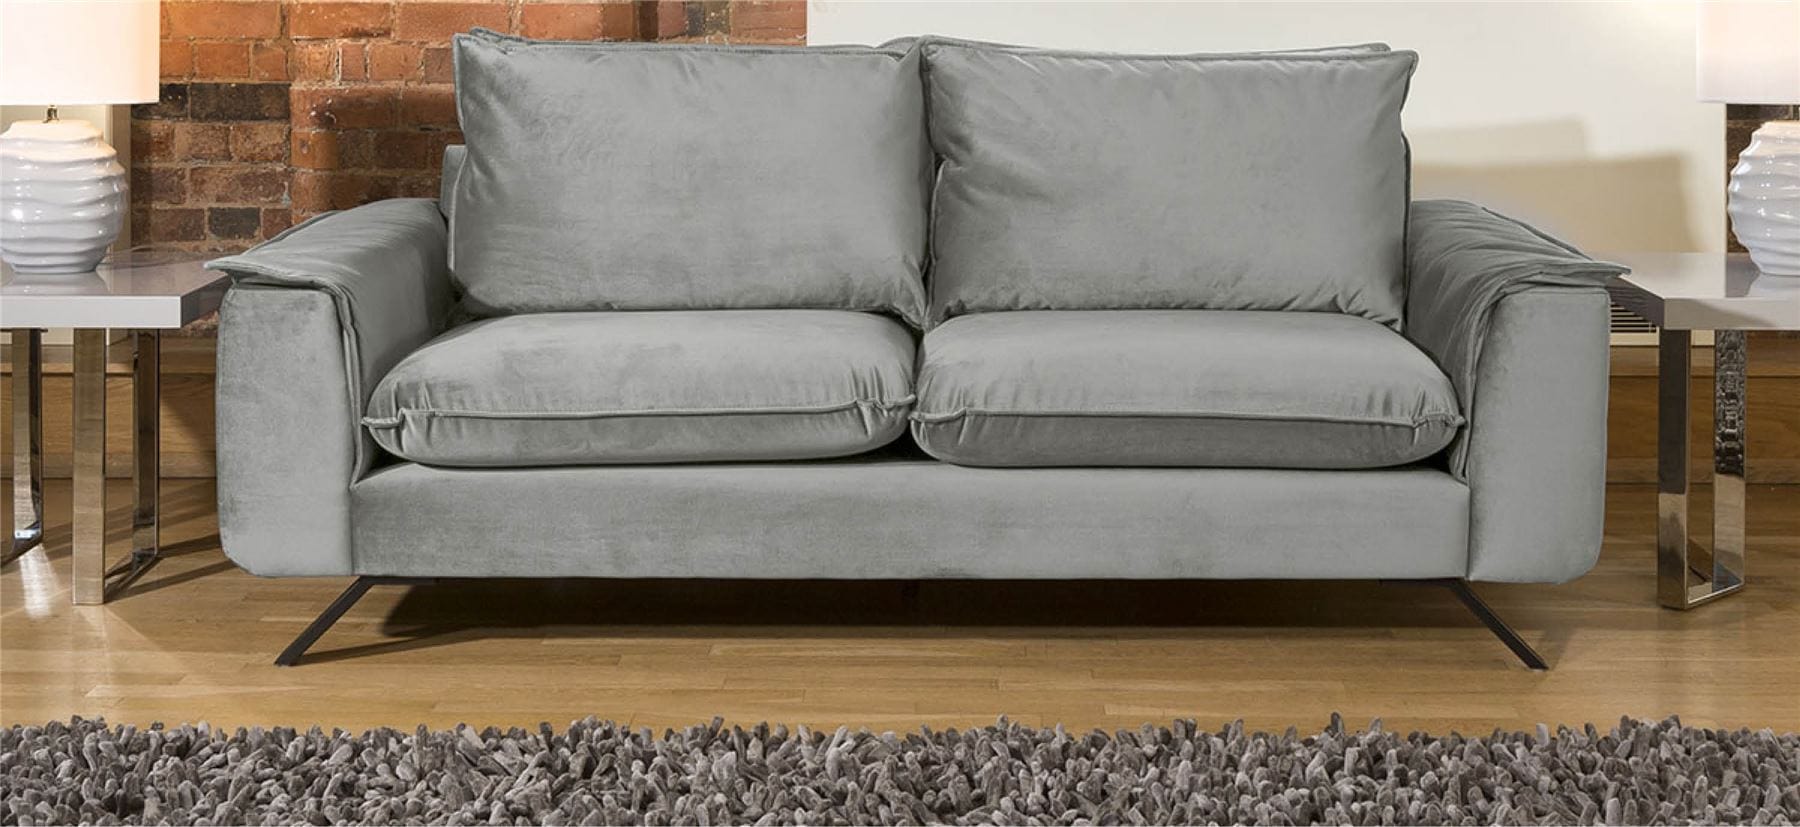 Quatropi Ellie Range Large Double / 2 Seater Modular Sofa Many Fabrics 2.1m wide